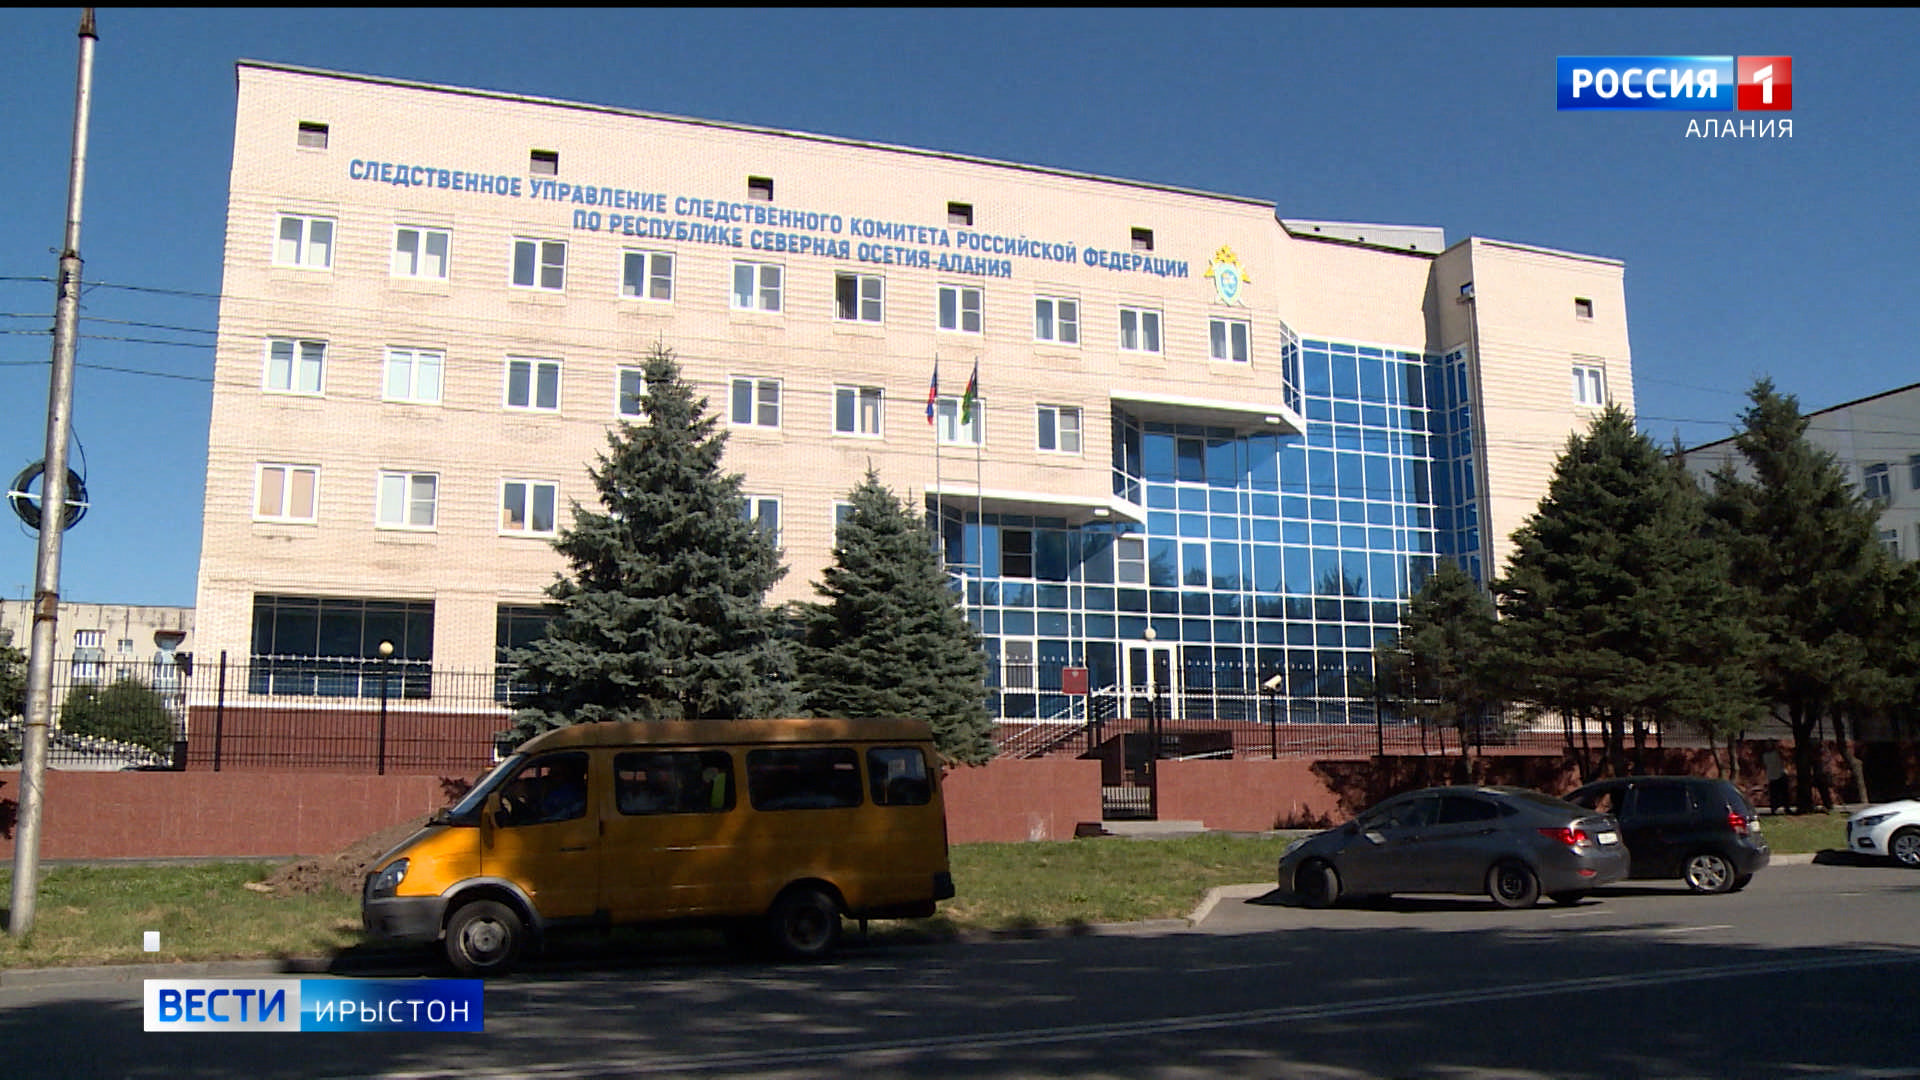 Два человека пострадали при хлопке газа на АЗС в Эльхотово, СКР проводит проверку